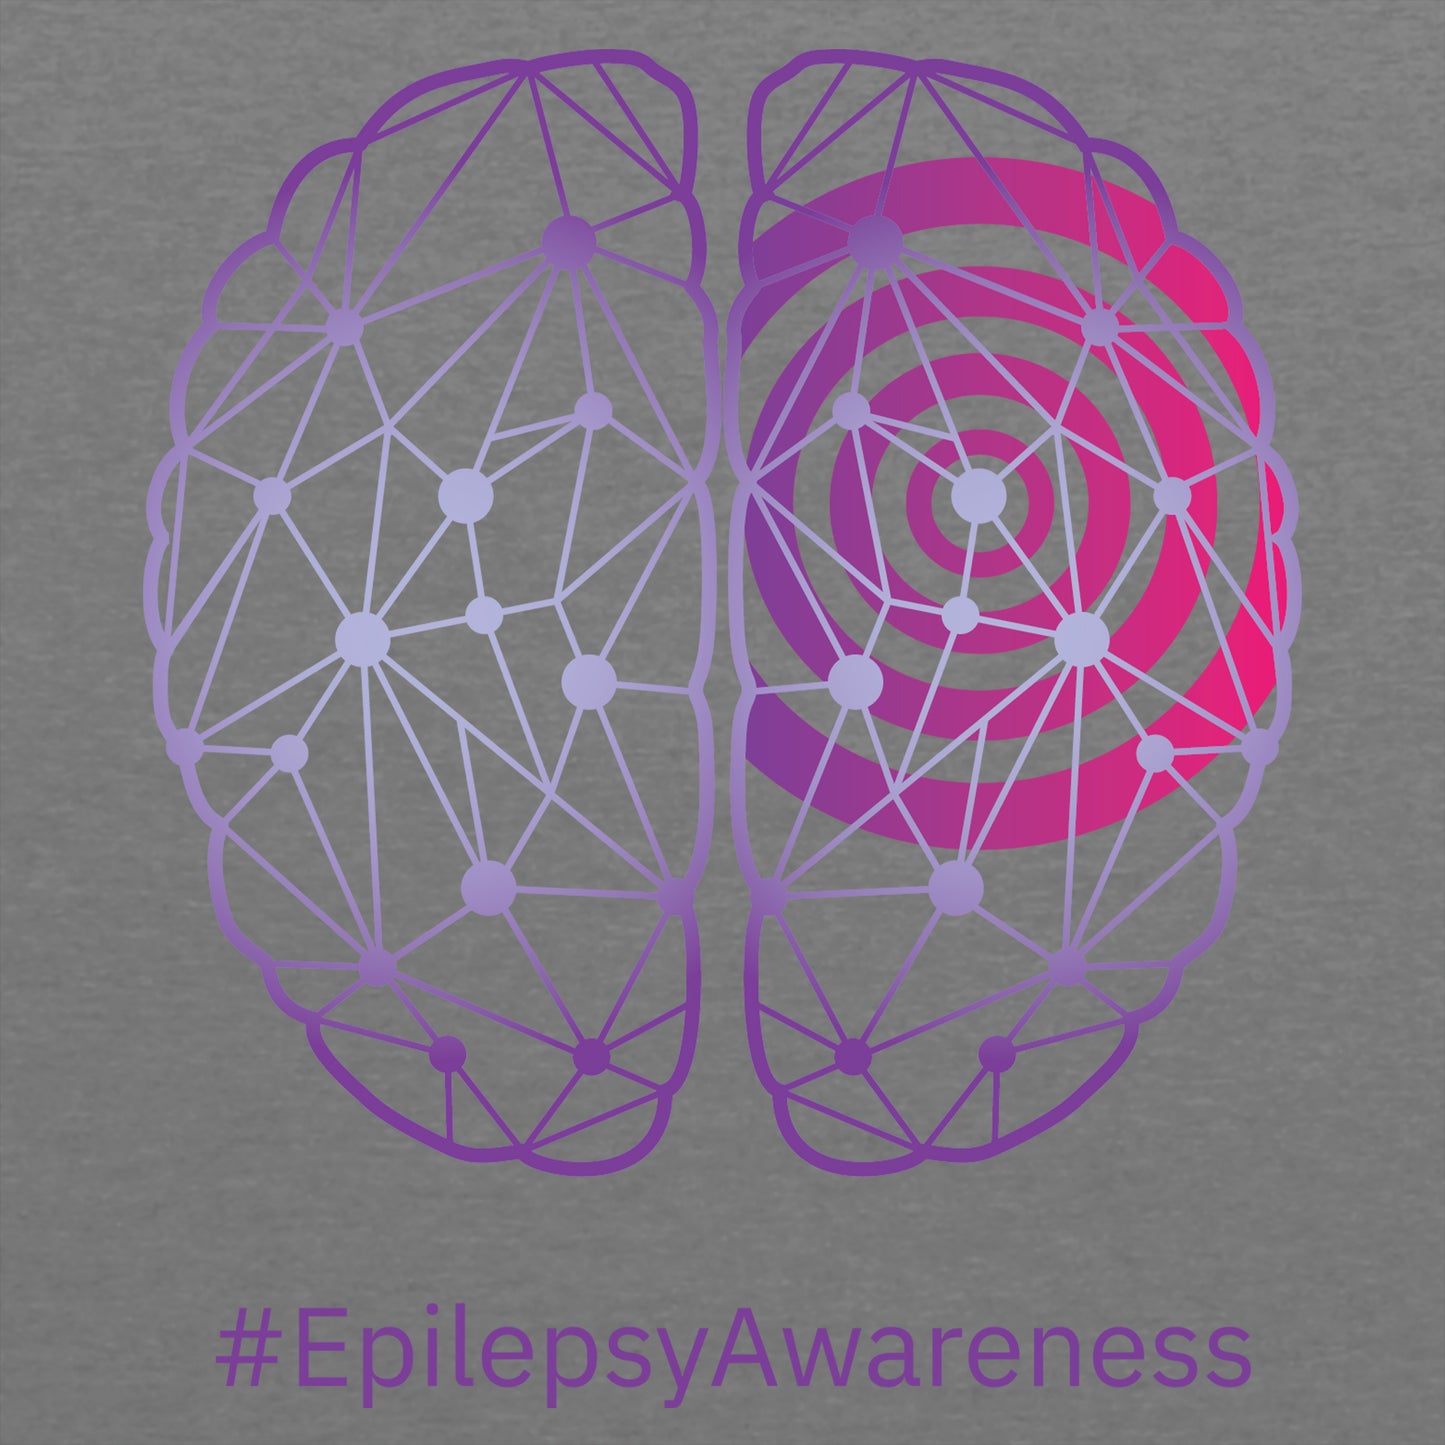 Epilepsy Awareness Toddler T-Shirt- Heather